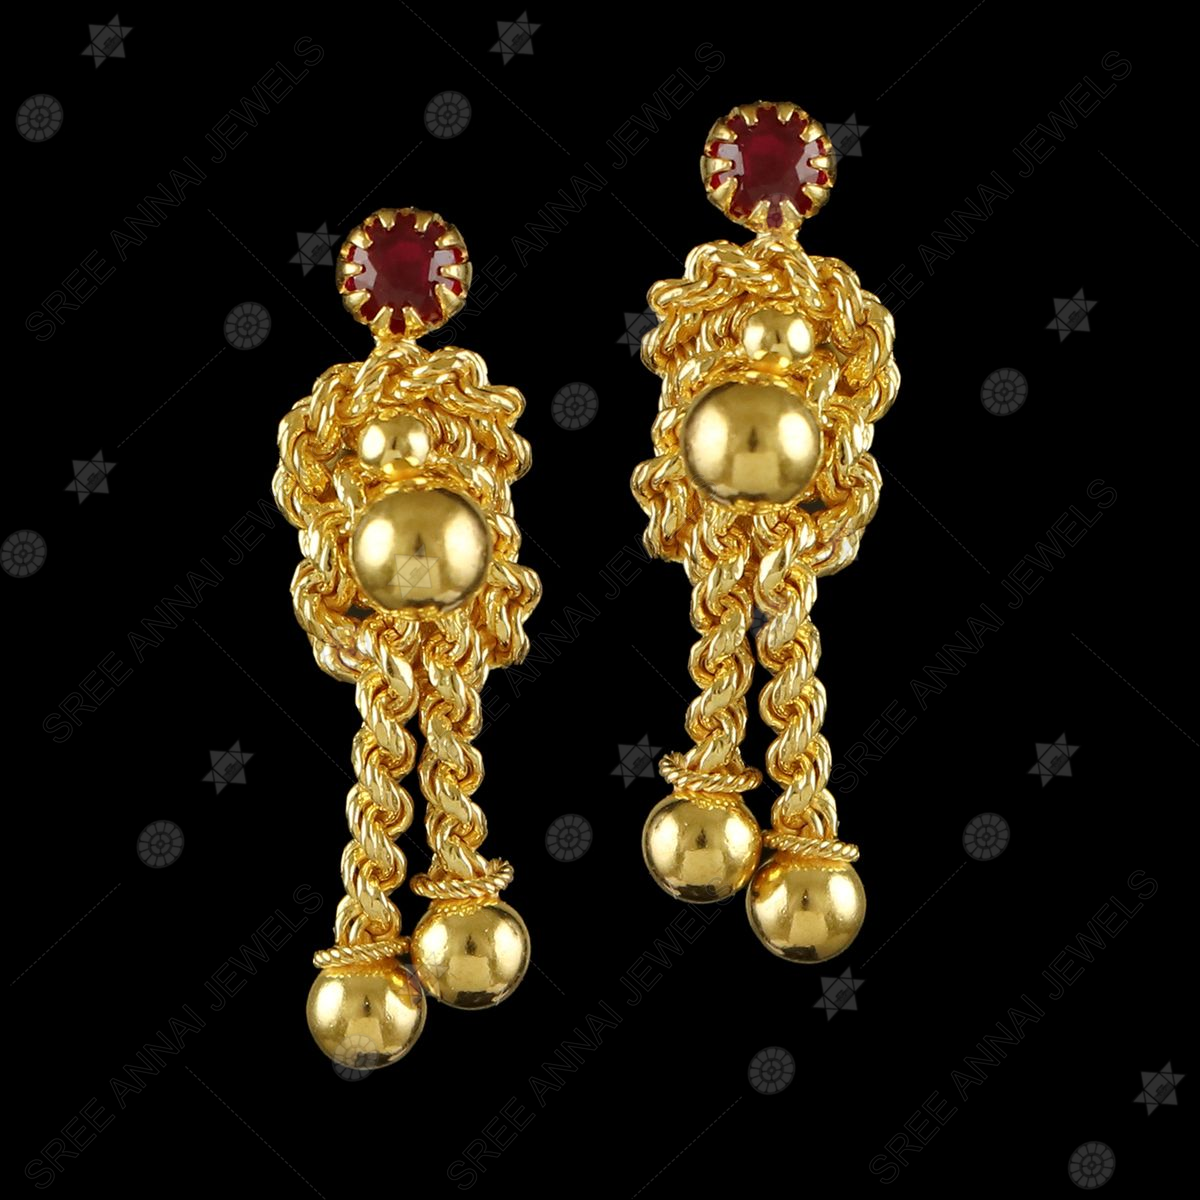 22K Gold 'Detachable' Drop Earrings for Women - 235-GER11184 in 6.450 Grams